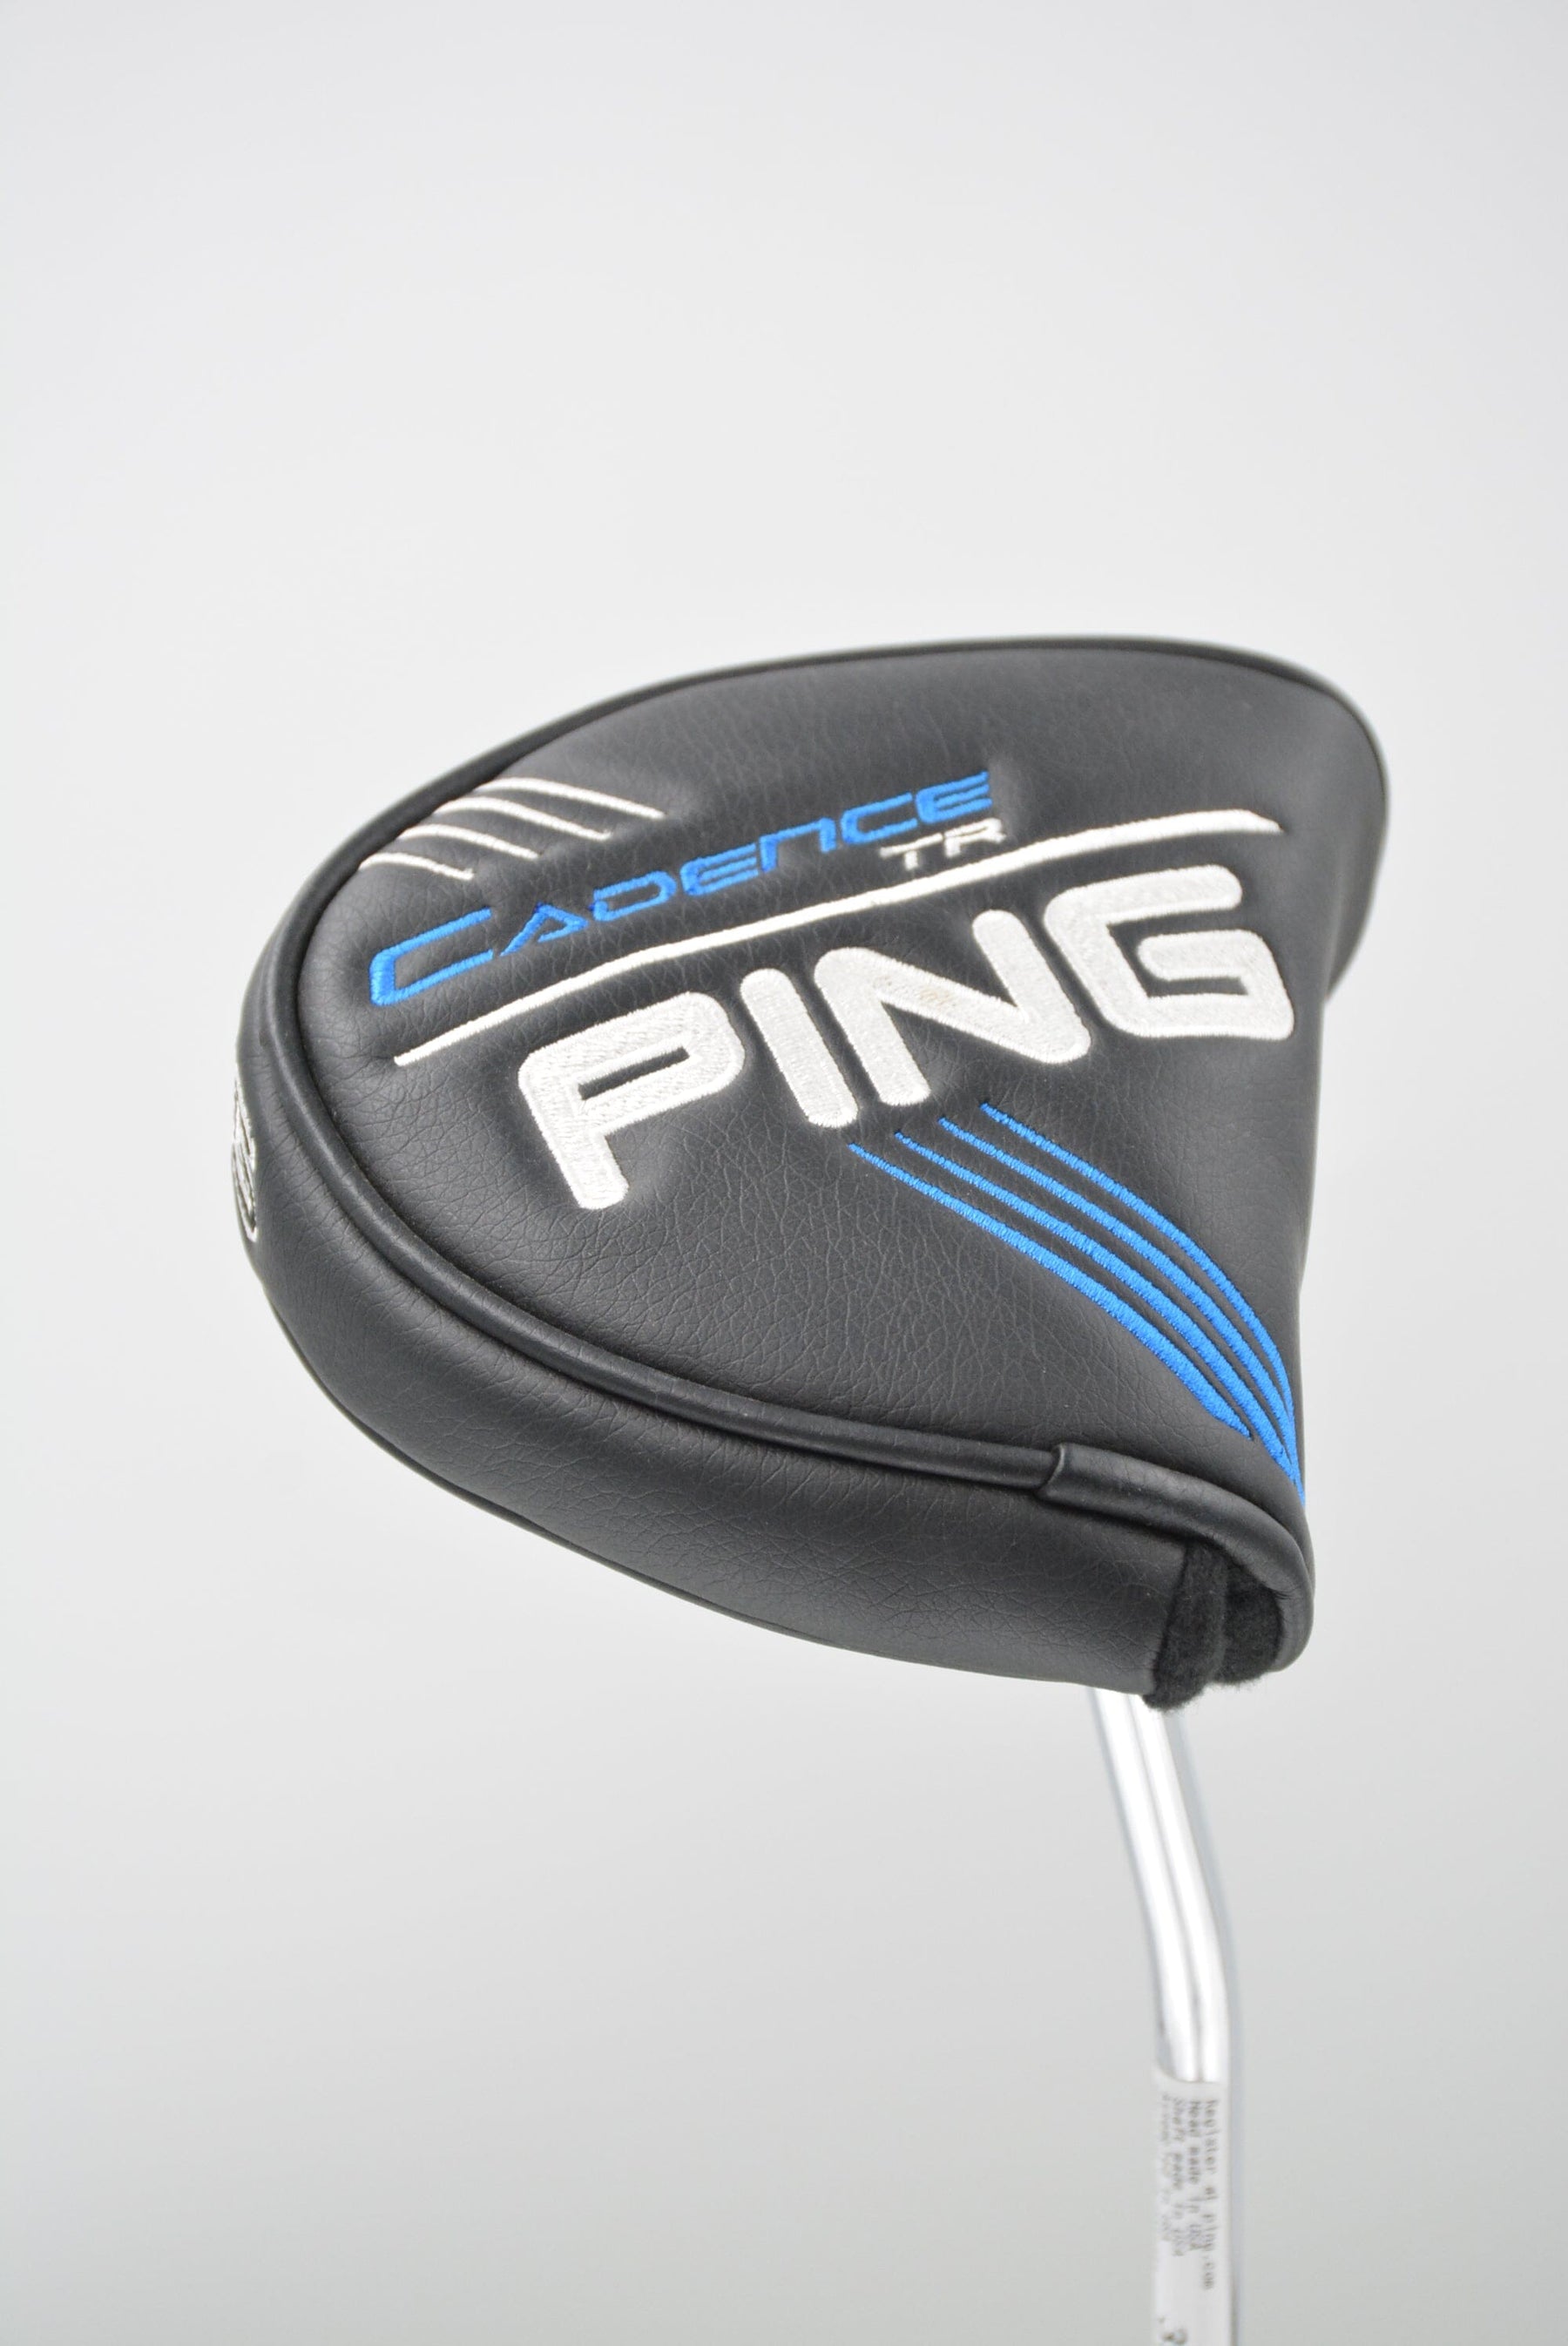 Ping Cadence Tr Ketsch 35" Golf Clubs GolfRoots 